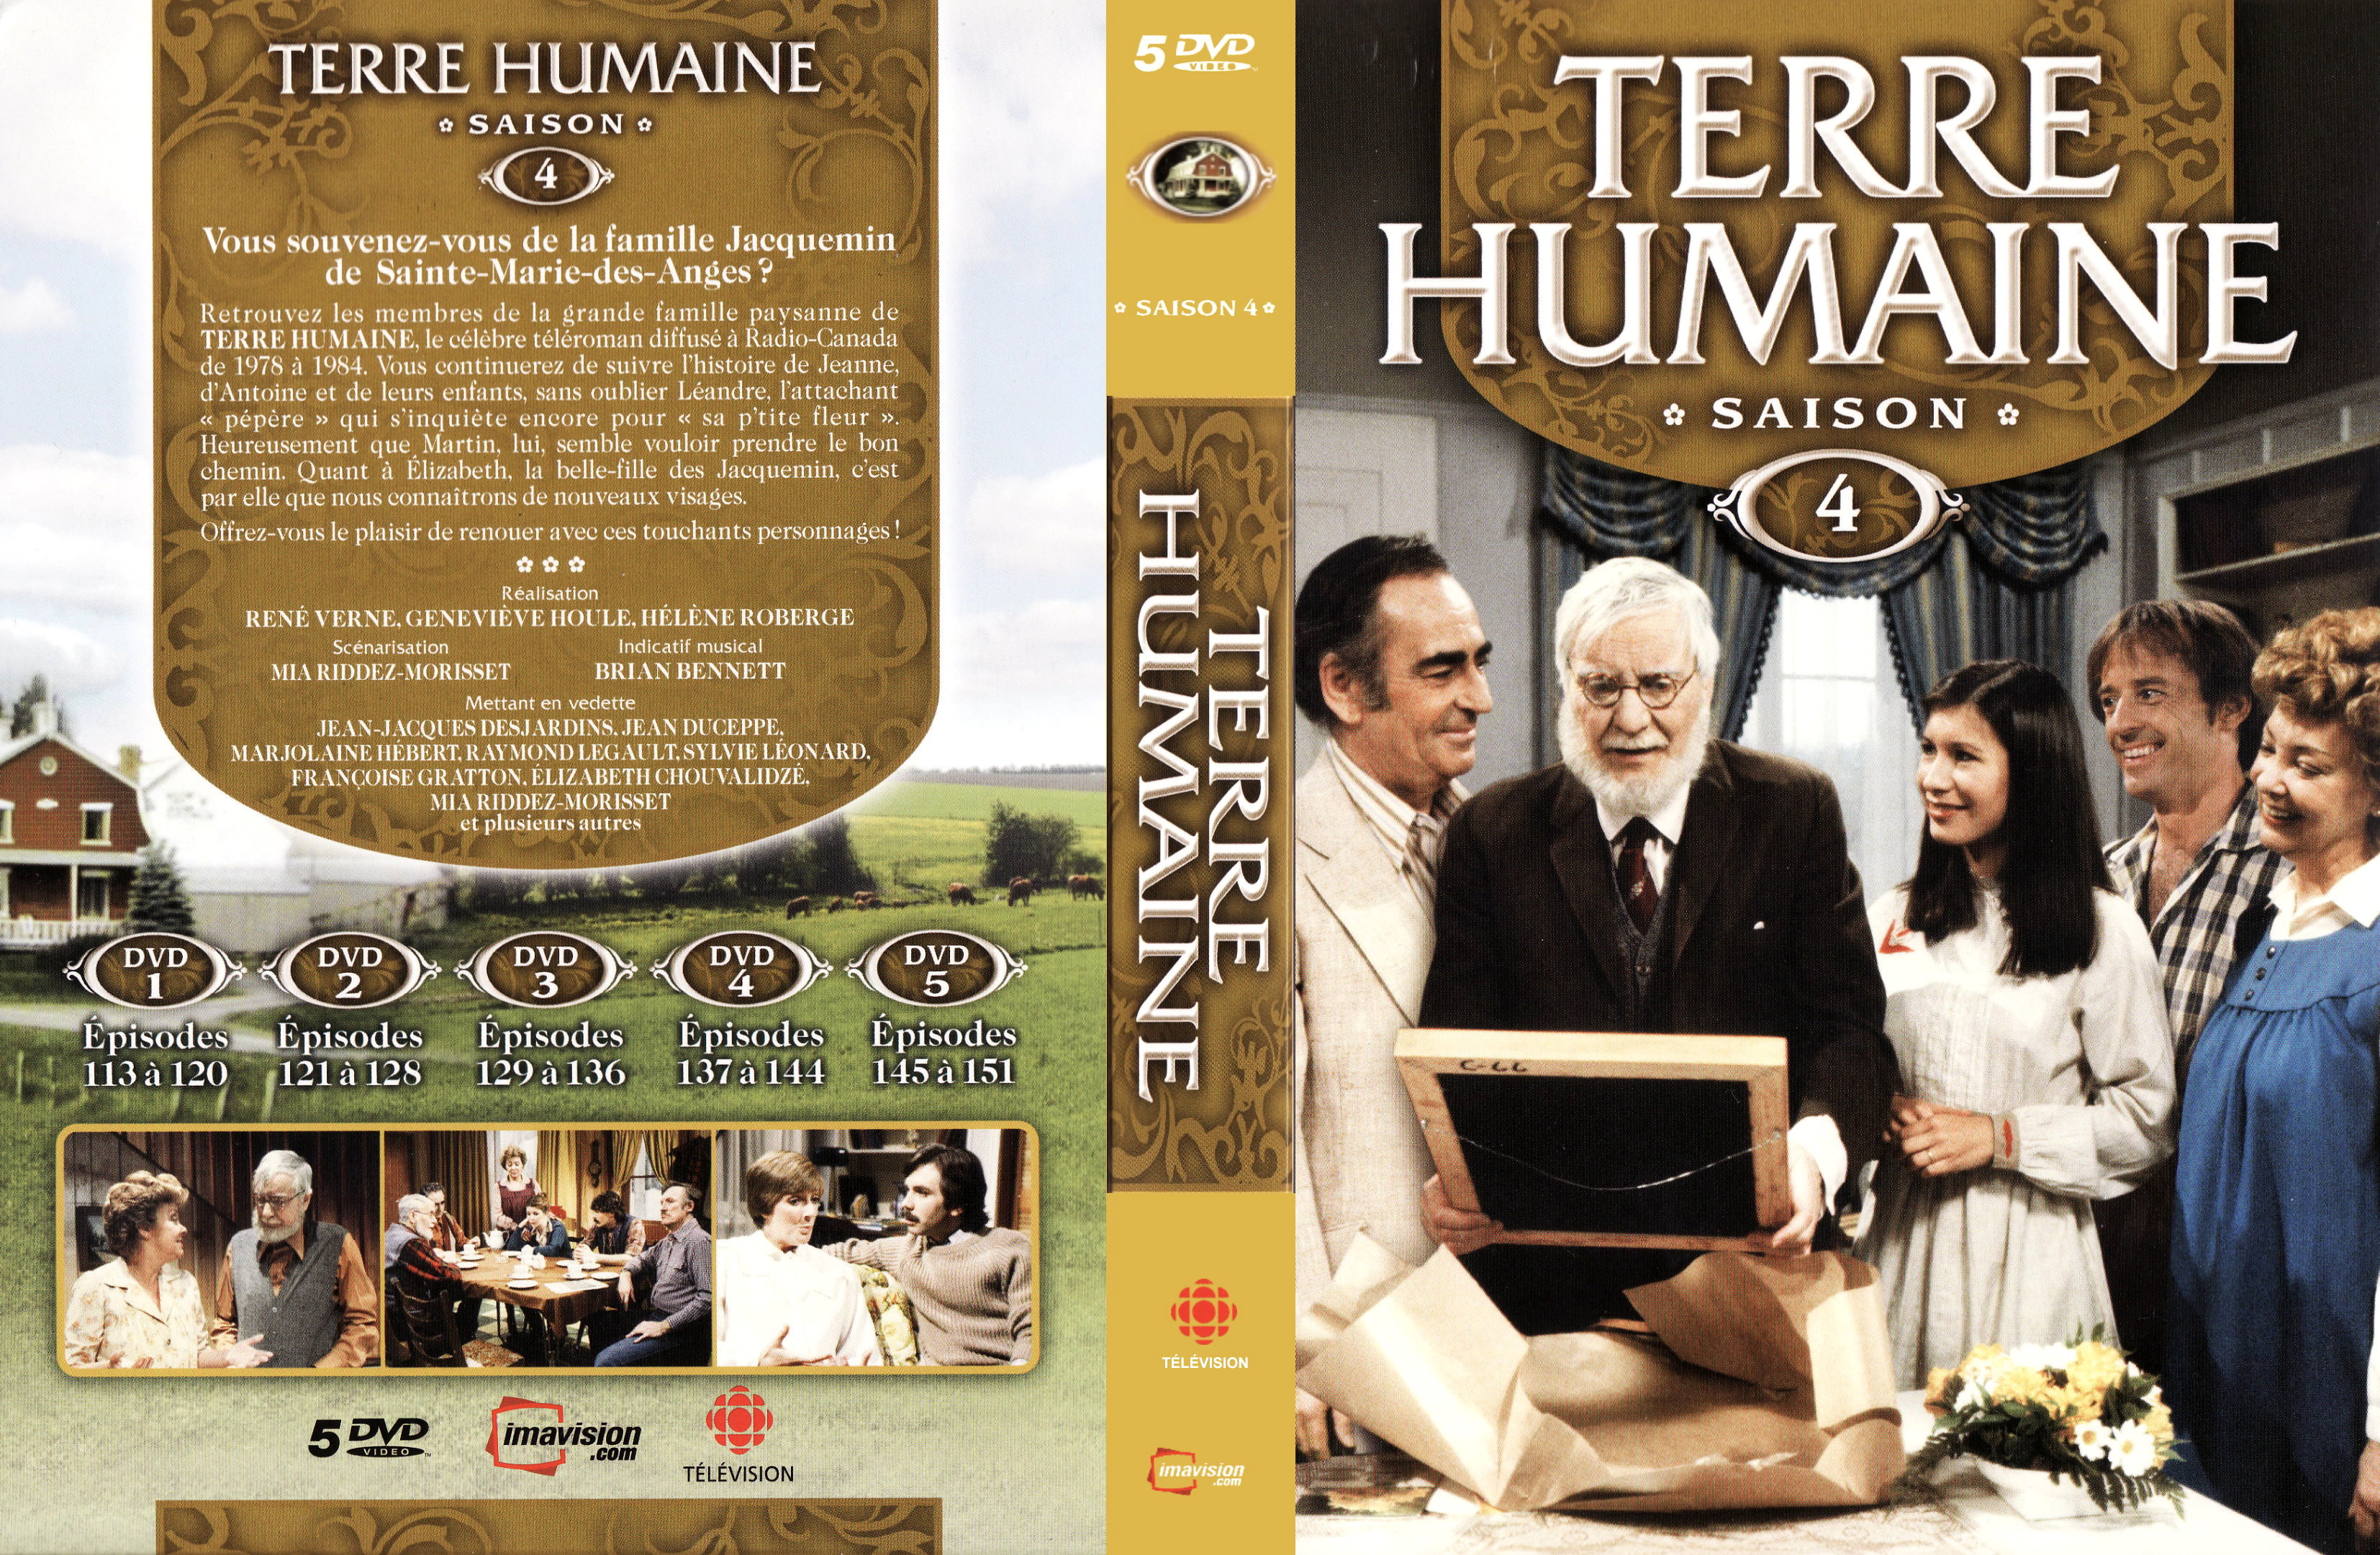 Jaquette DVD Terre humaine Saison 4 COFFRET